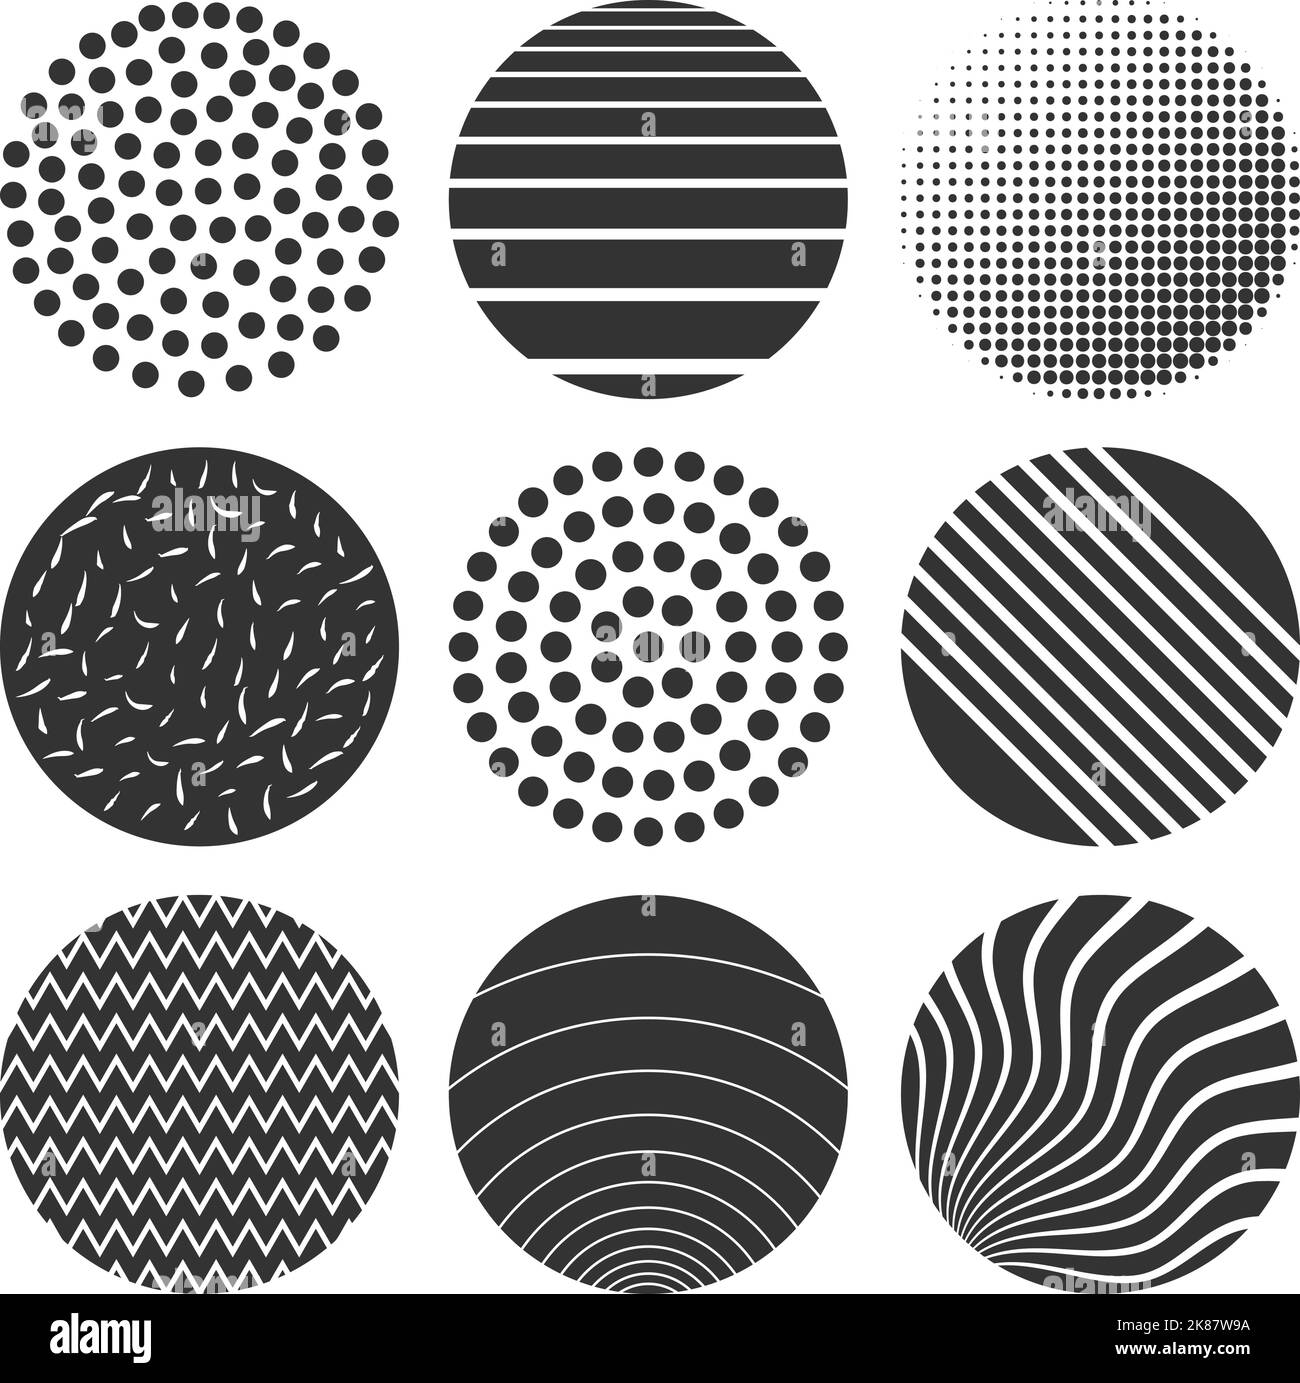 conjunto de formas geométricas circulares, elementos de diseño vintage y retro aislados sobre ilustración de vector blanco Ilustración del Vector